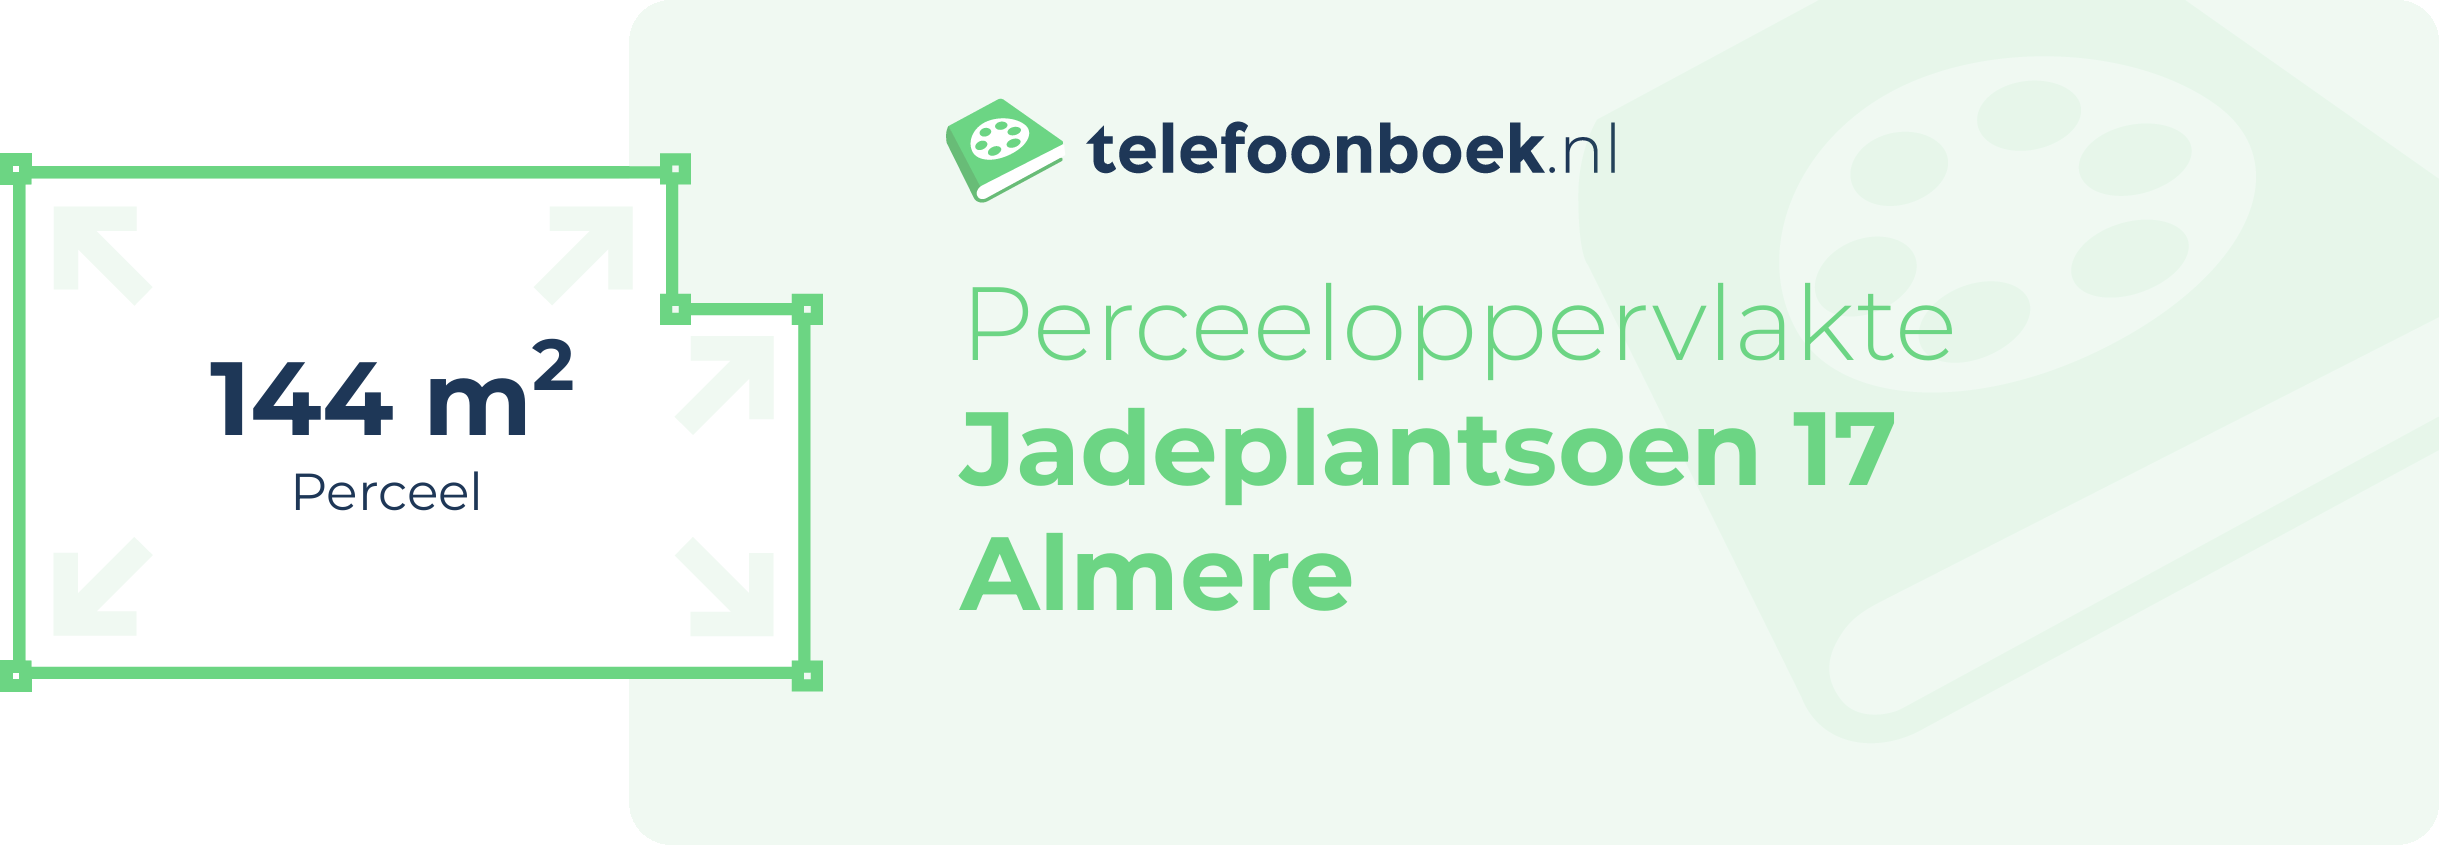 Perceeloppervlakte Jadeplantsoen 17 Almere